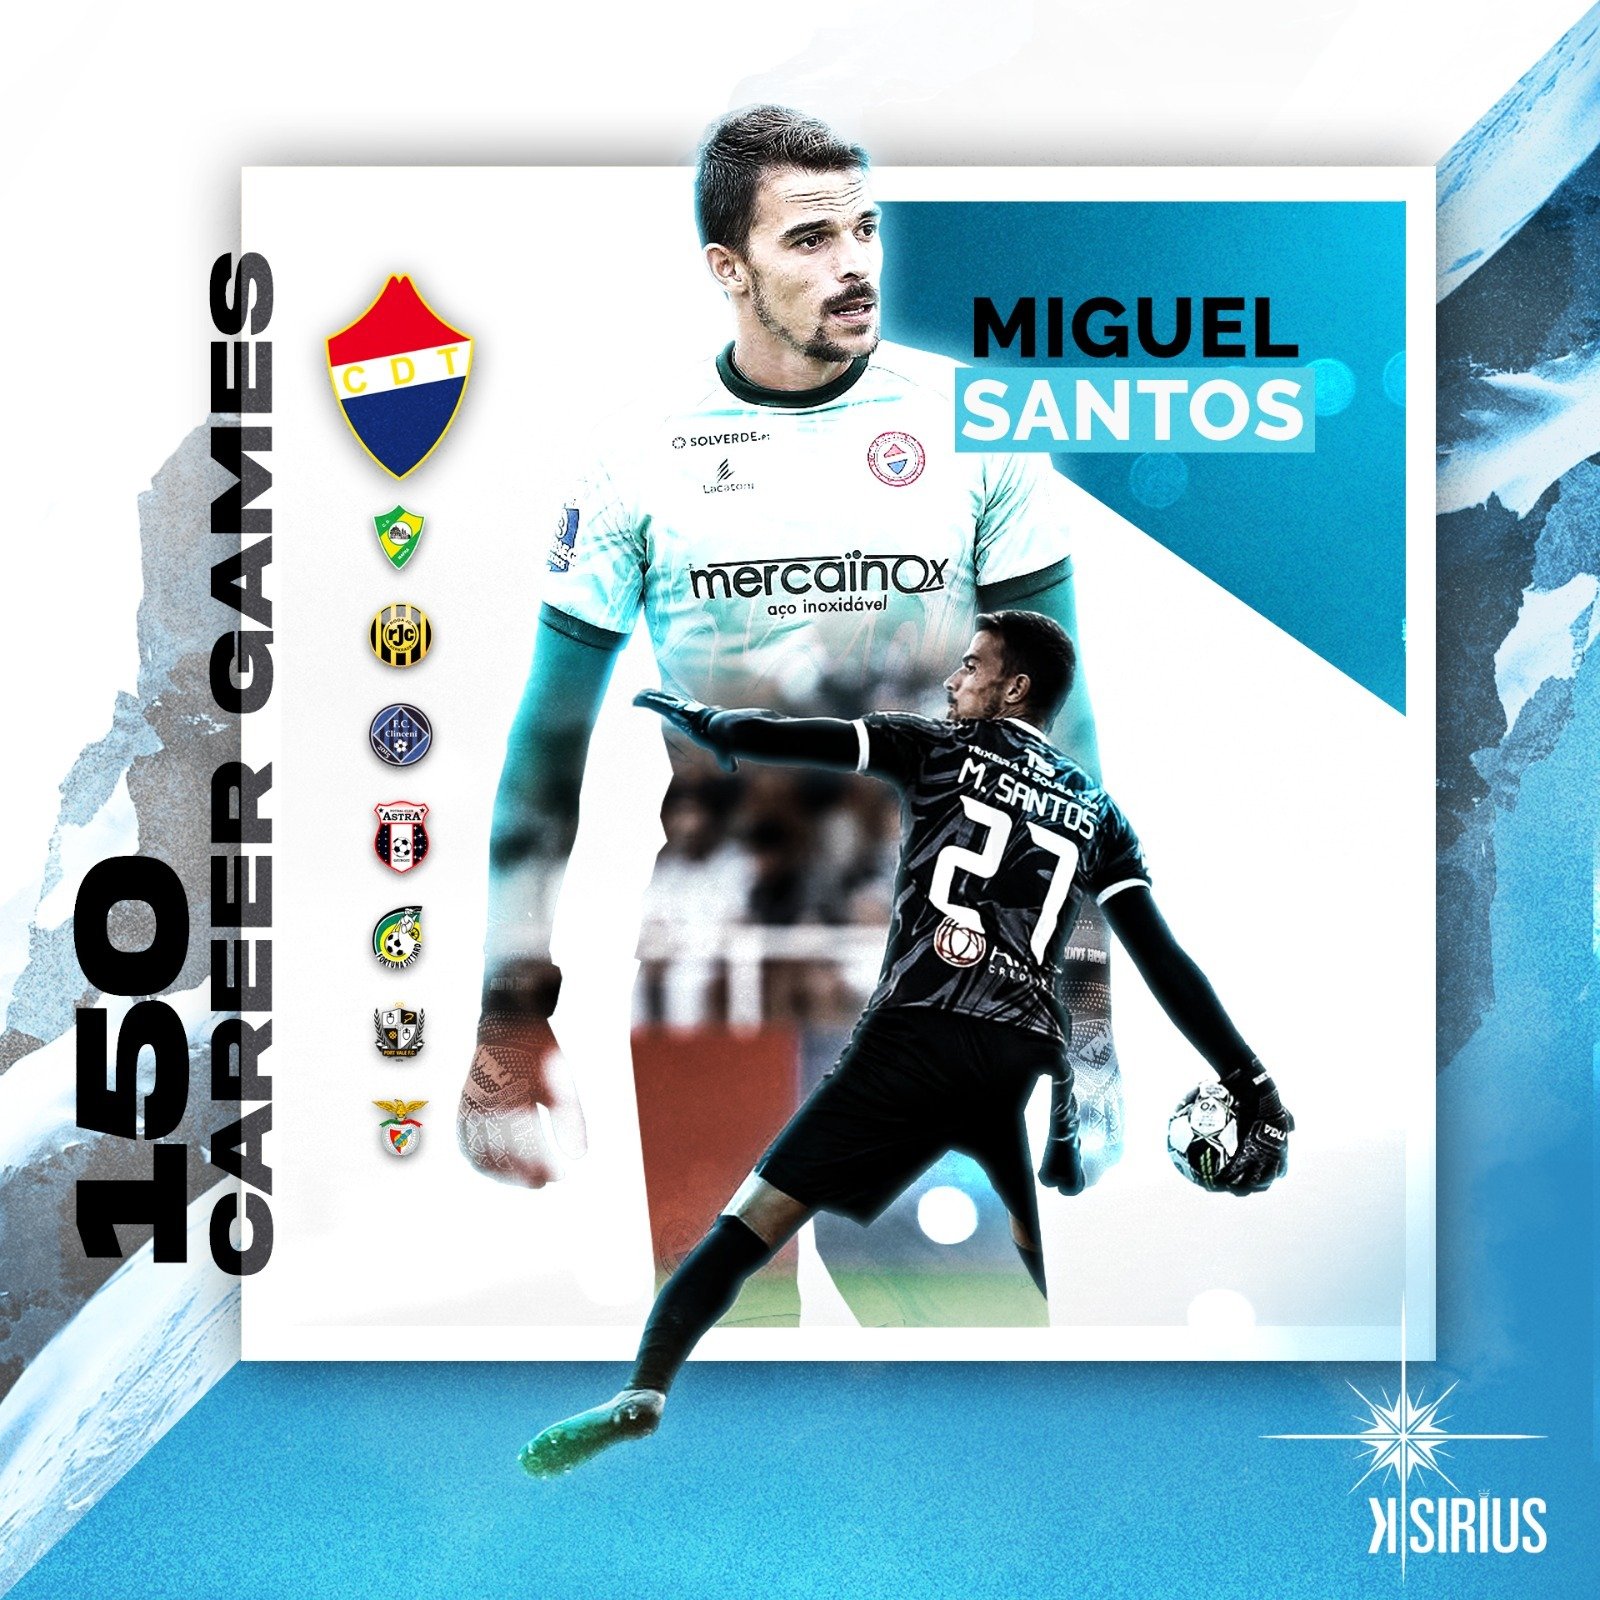 150 Career Games: Miguel Santos (CD Trofense)